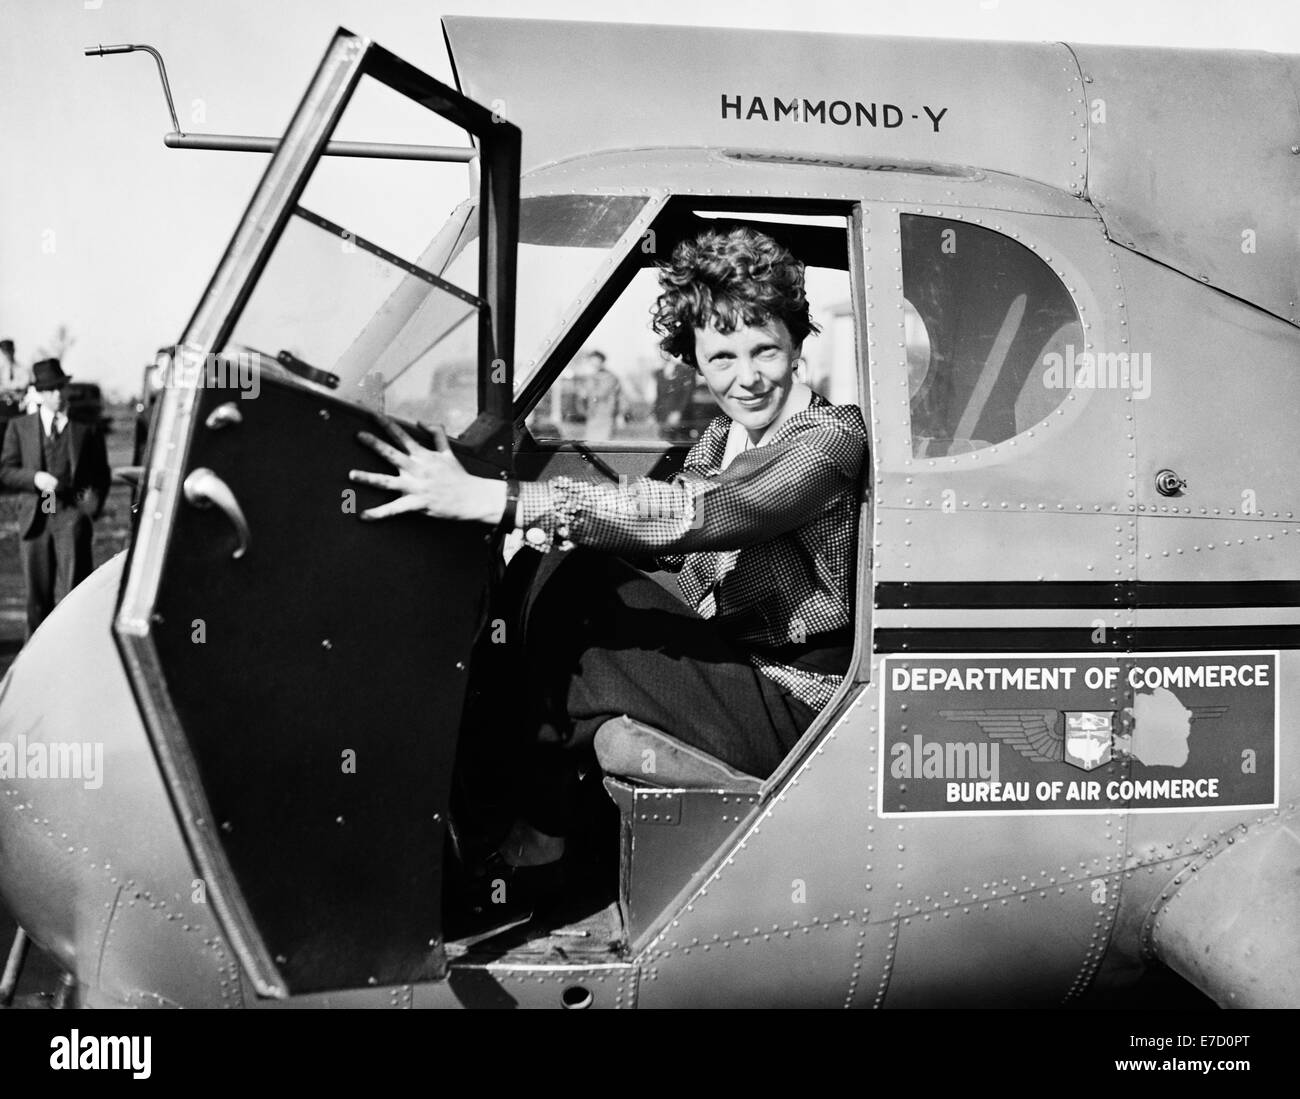 Photo d'époque de la pionnière et auteure de l'aviation américaine Amelia Earhart (1897 – déclarée morte en 1939) – Earhart et son navigateur Fred Noonan ont connu une célèbre disparition en 1937 alors qu'elle essayait de devenir la première femme à effectuer un vol de navigation du globe. Earhart est photographié en 1936, assis dans le poste de pilotage d'un avion du département américain du Commerce. Banque D'Images